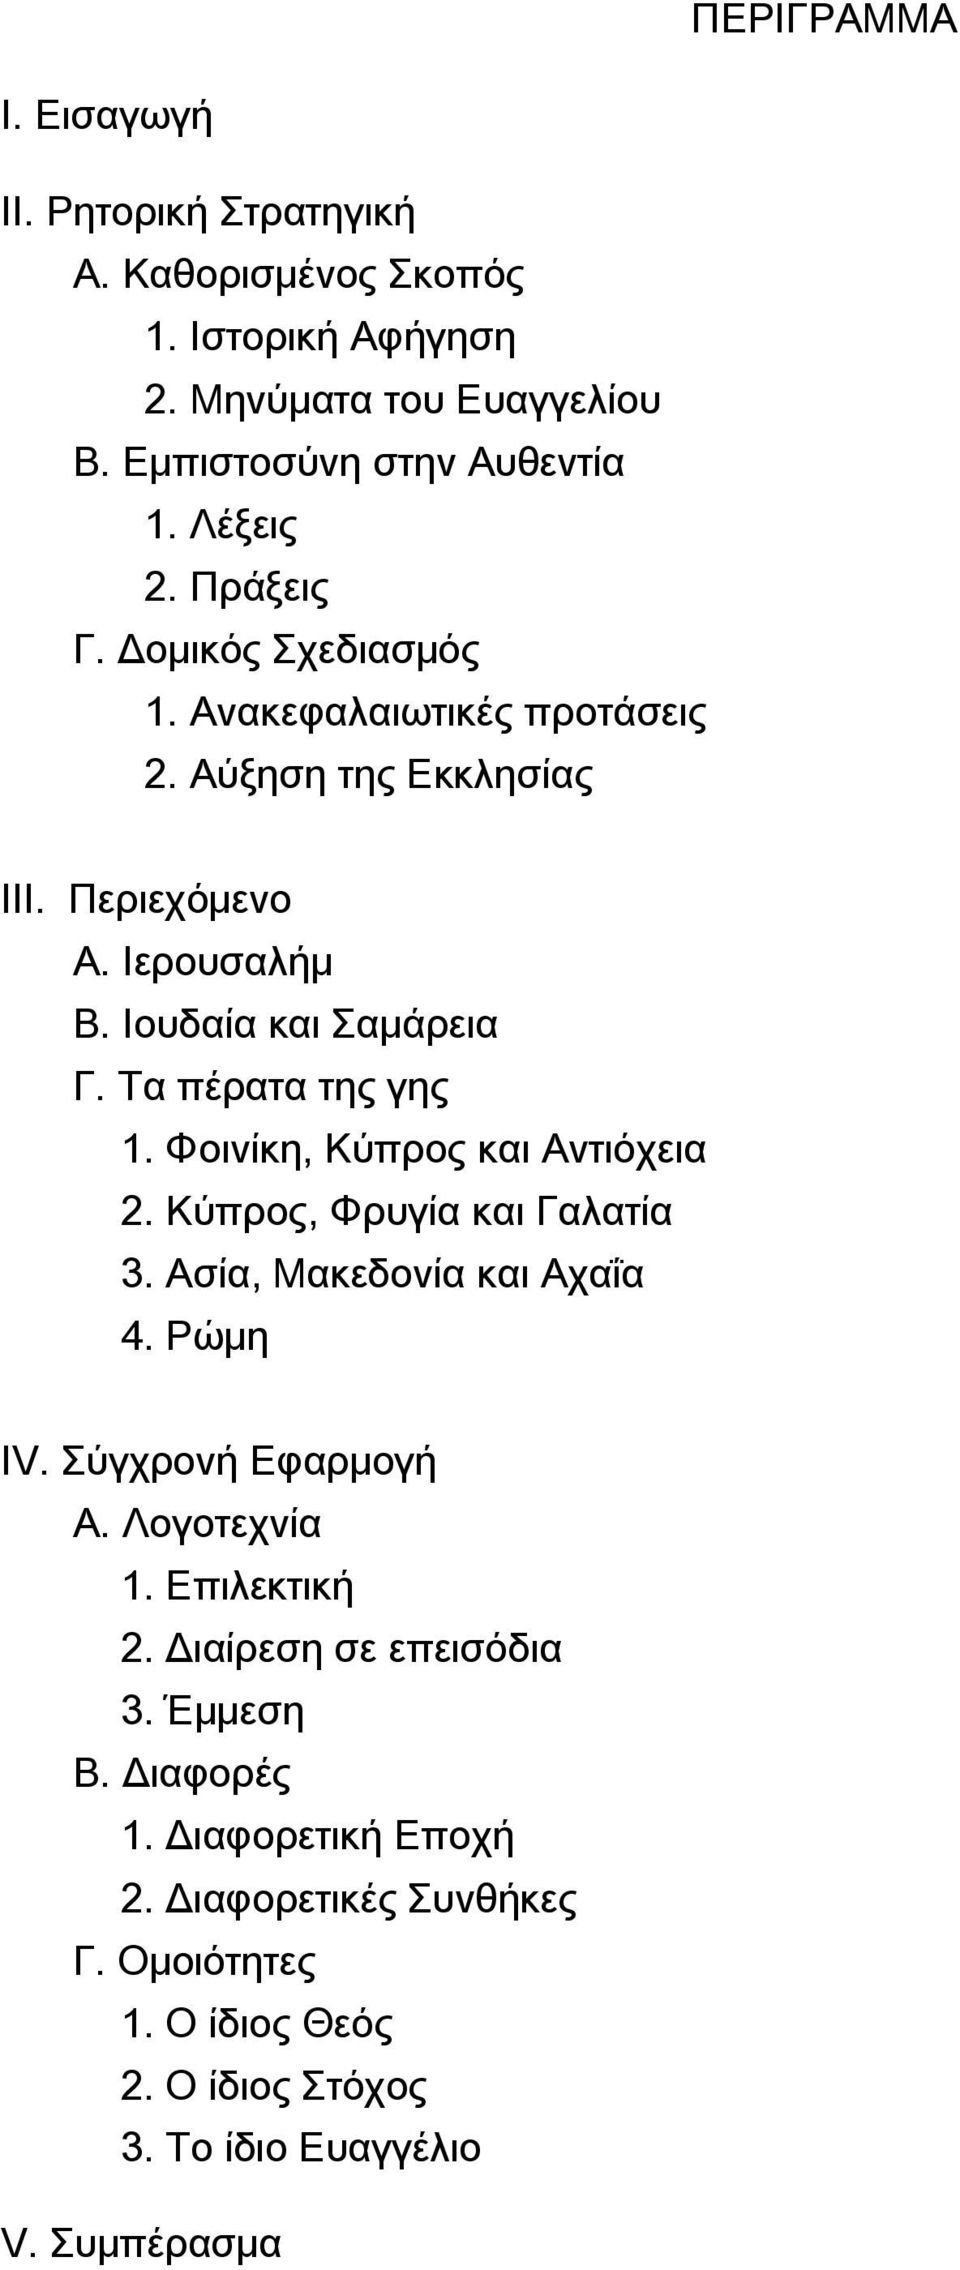 Τα πέρατα της γης 1. Φοινίκη, Κύπρος και Αντιόχεια 2. Κύπρος, Φρυγία και Γαλατία 3. Ασία, Μακεδονία και Αχαΐα 4. Ρώμη IV. Σύγχρονή Εφαρμογή Α. Λογοτεχνία 1.